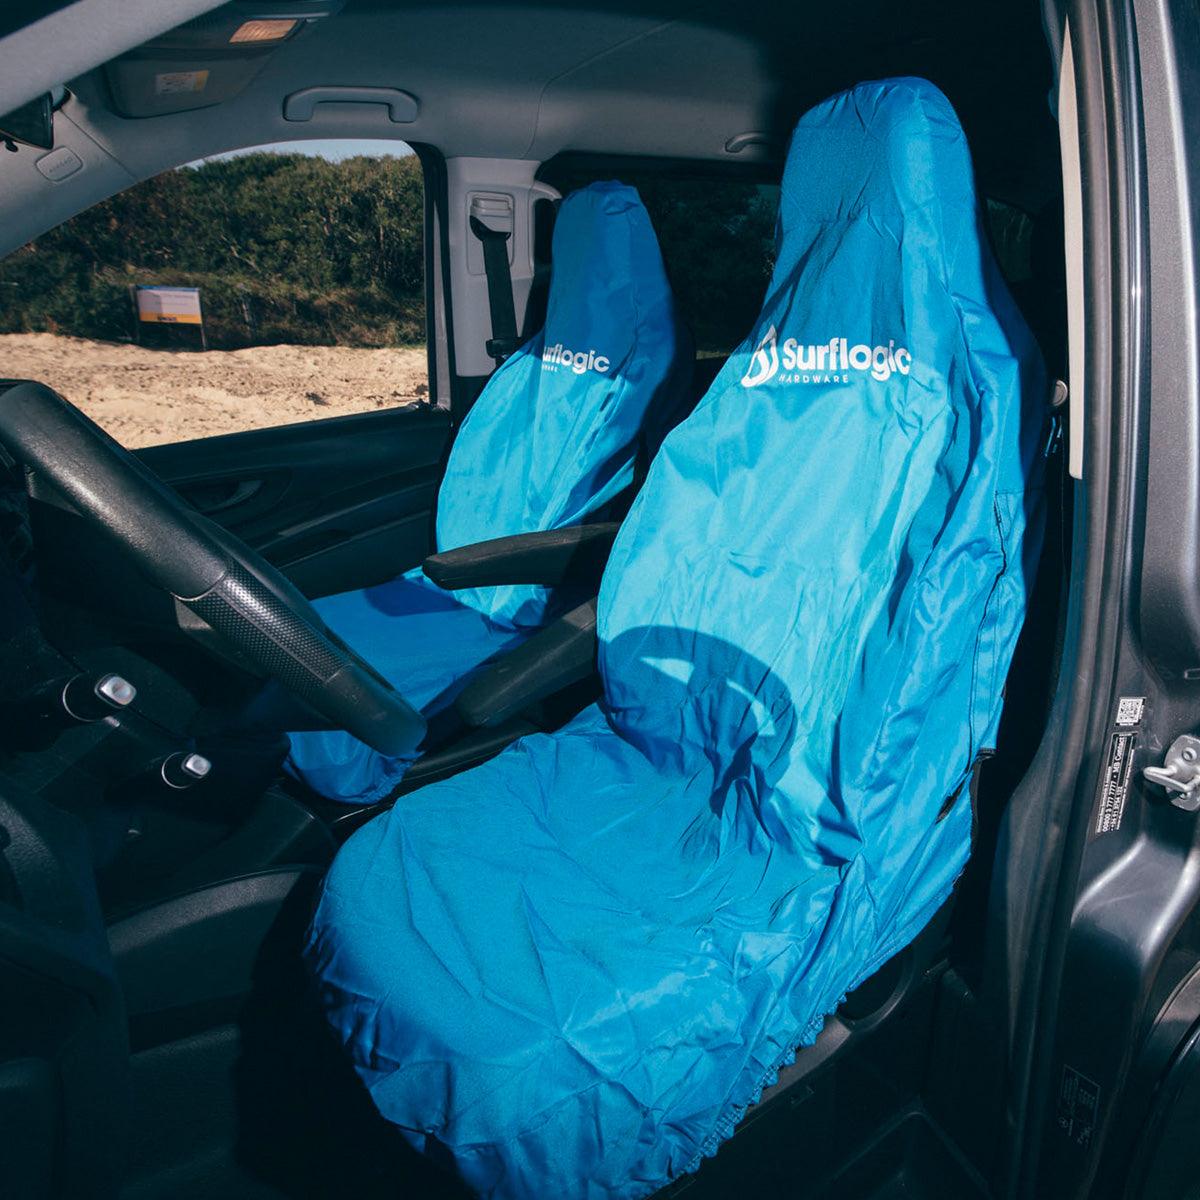 Surflogic Car Seat Cover - Kiteshop.com